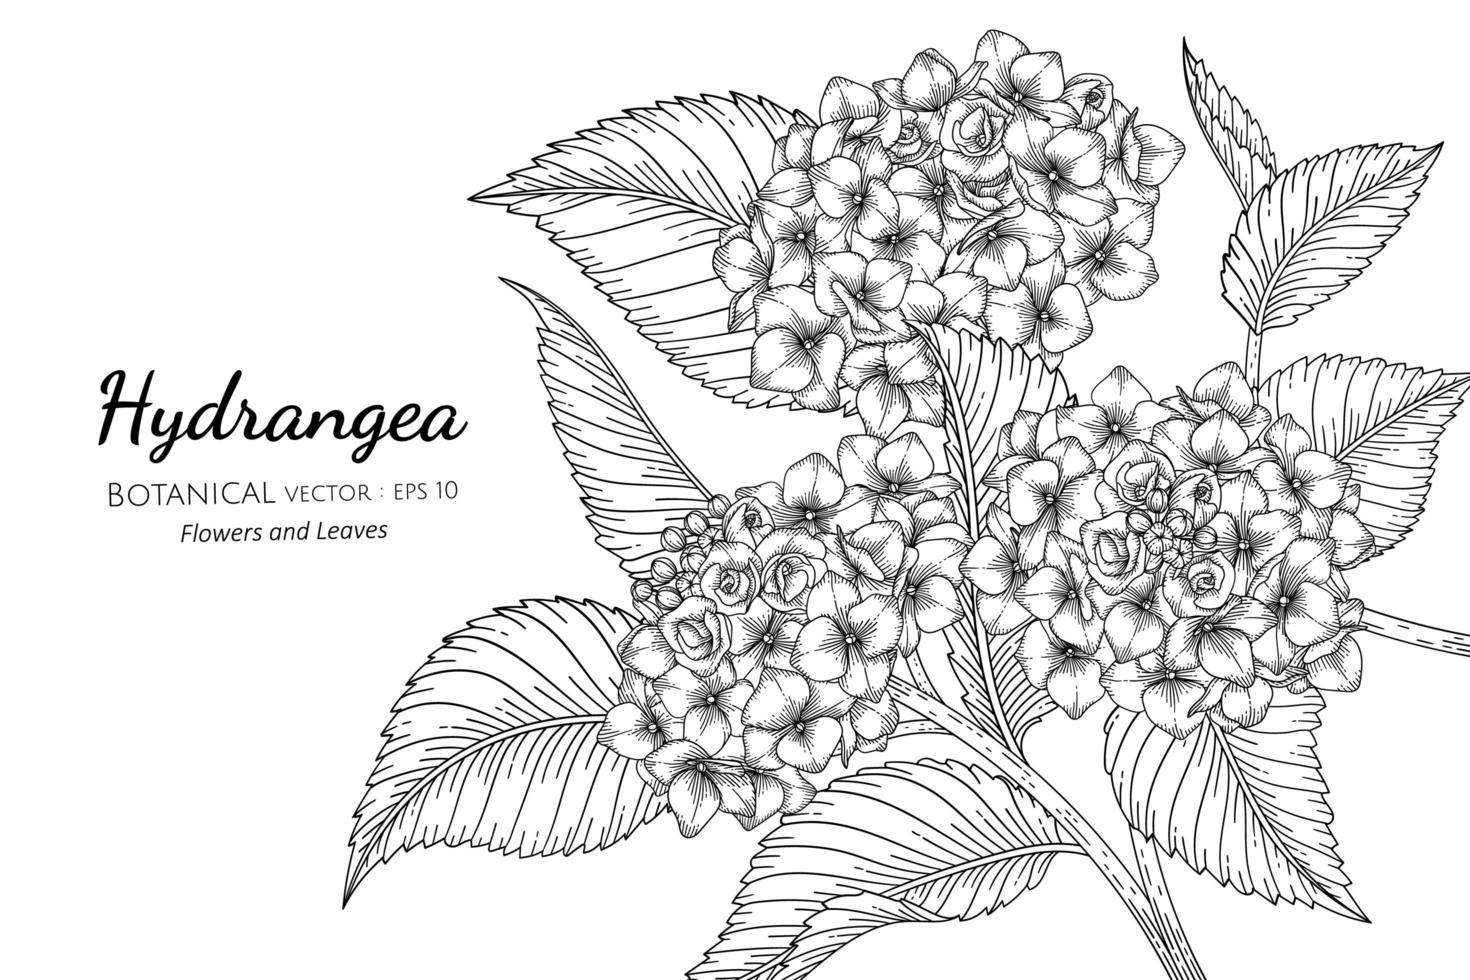 hortensia bloem en blad hand getekend botanische illustratie met lijntekeningen op witte achtergrond vector